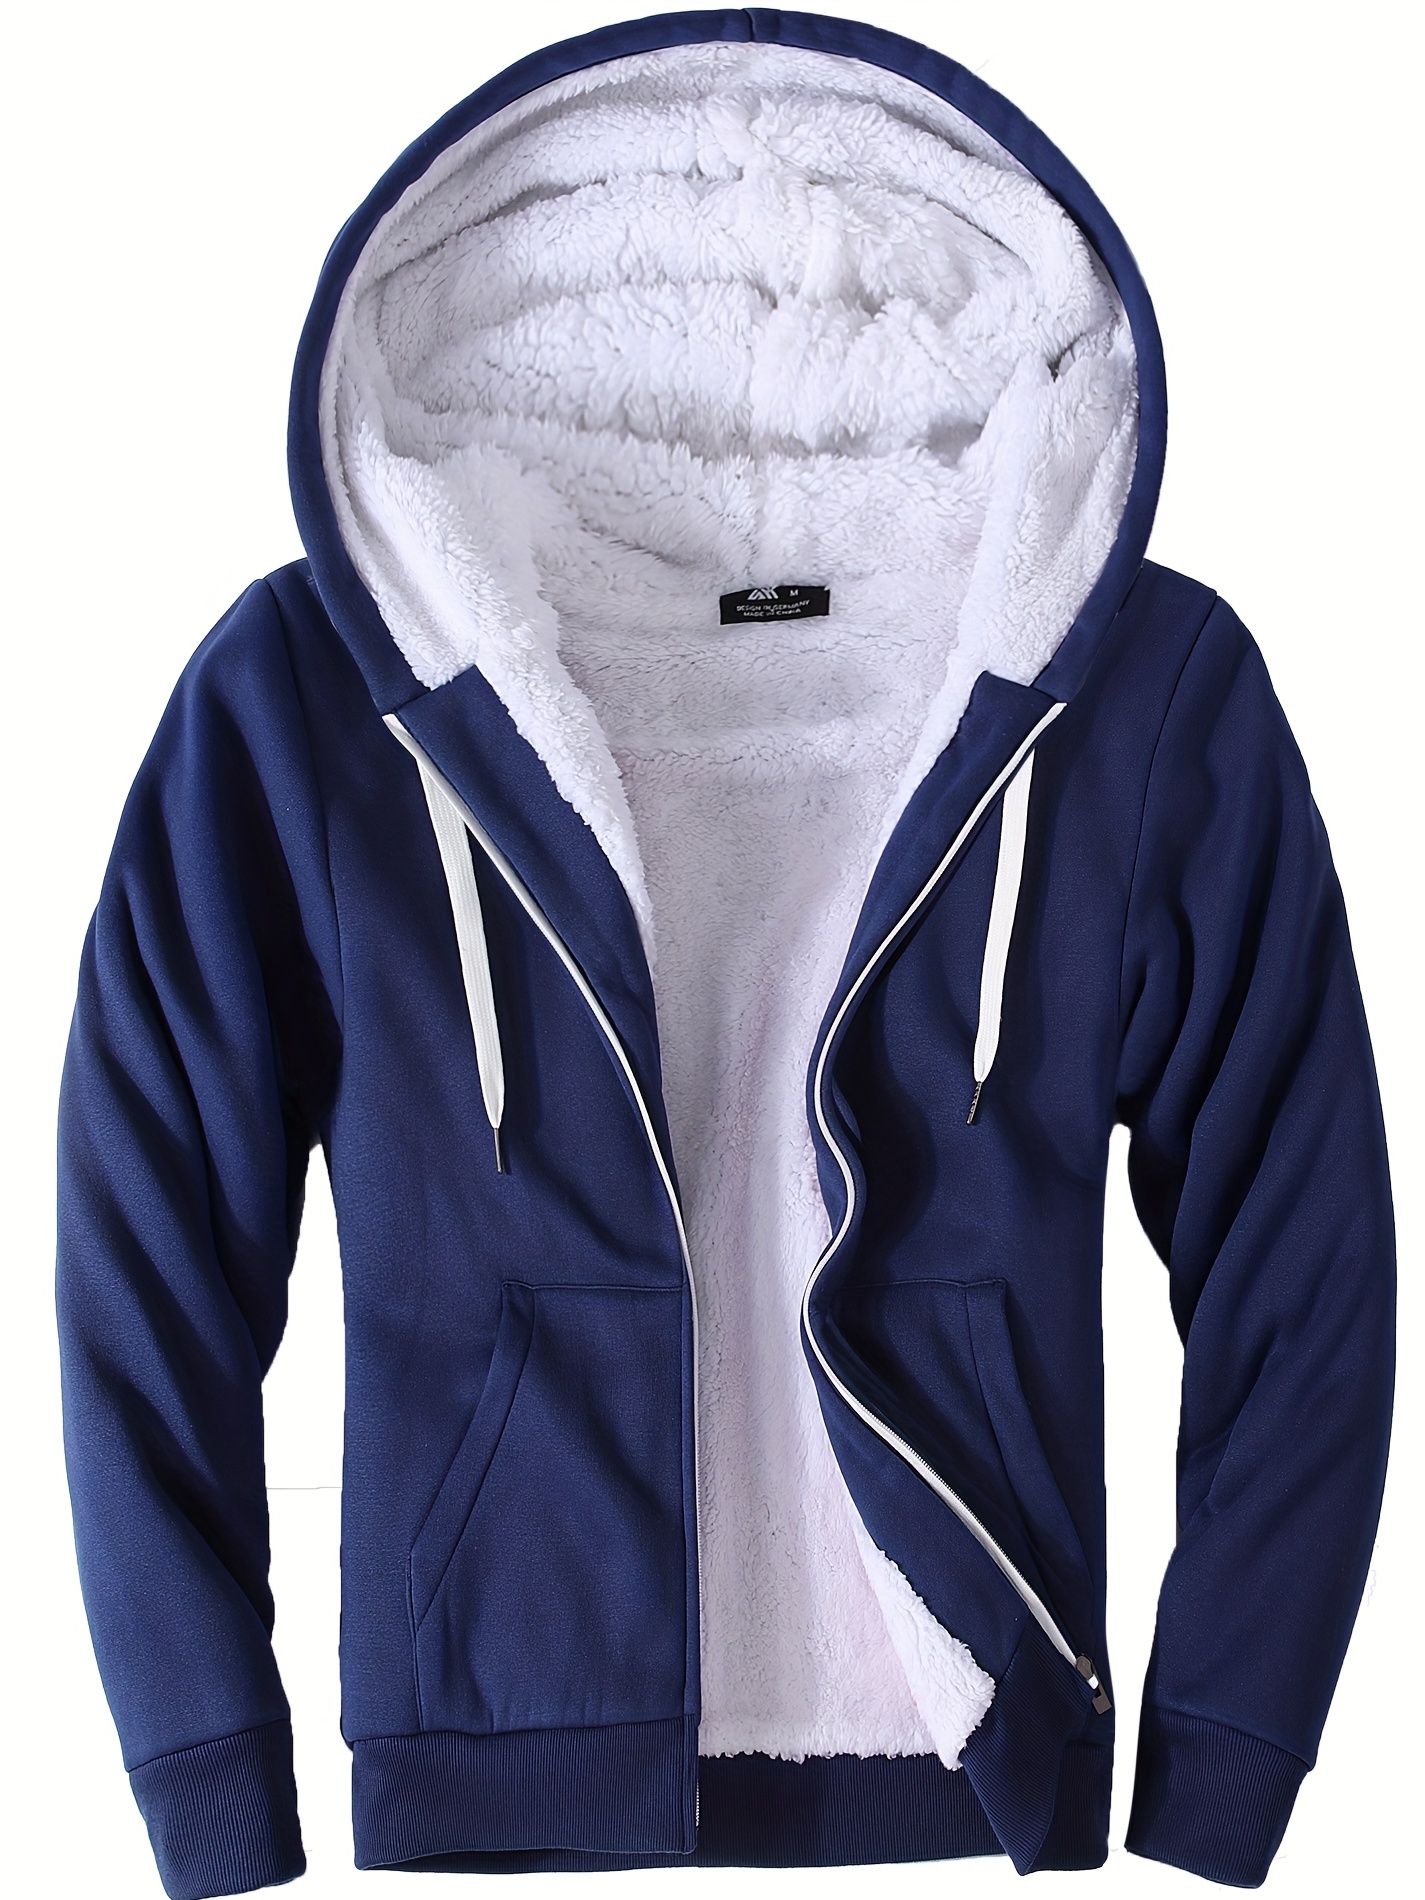 TDEOK Veste d'hiver à capuche pour homme - Style vintage - Avec doublure en  polaire - Grandes tailles - Manteau d'hiver avec capuche - Veste  d'extérieur chaude en polaire, bleu, S 